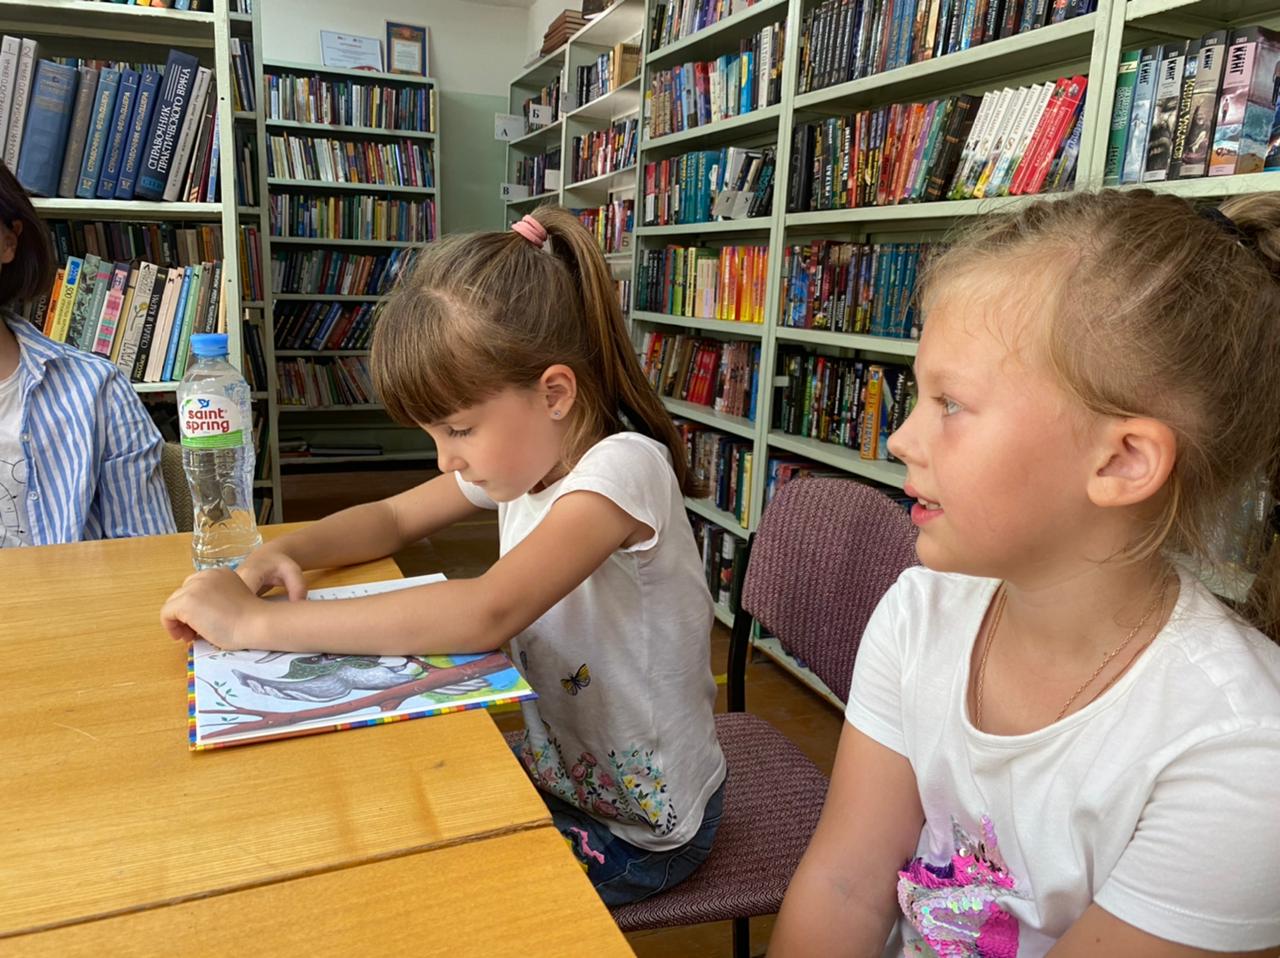 Читаем сказку вместе. Фото чтение рассказов детям в детском саду. Фото читающего сказки ребенка 400-500 размера.